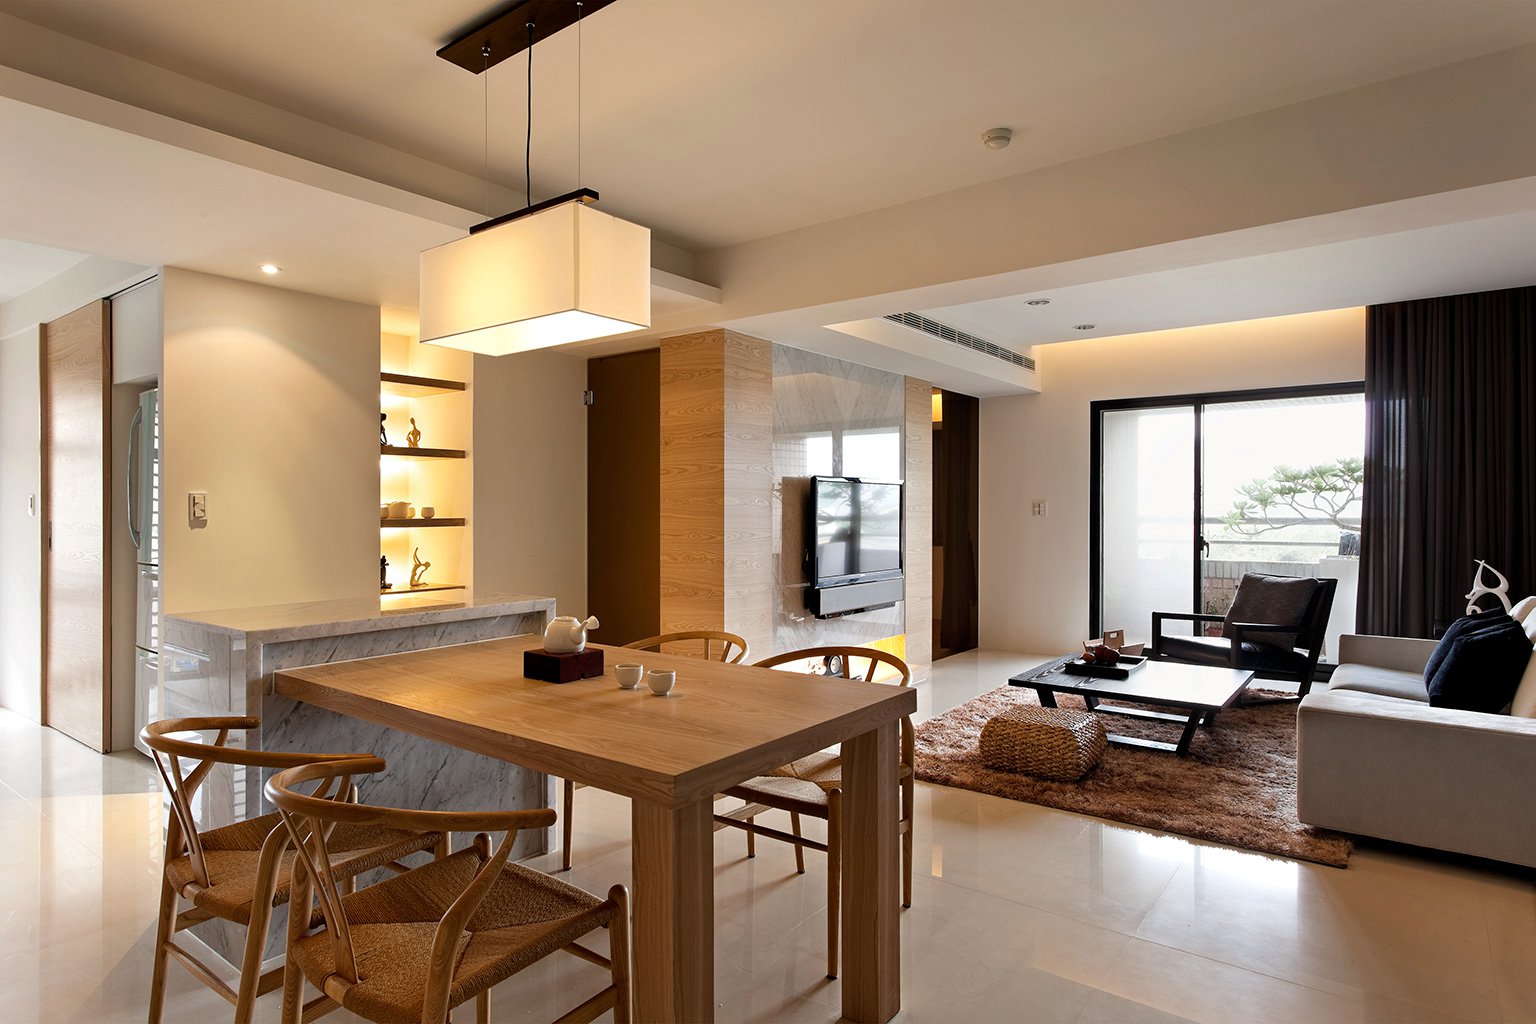 Kitchen diner design | Interior Design Ideas